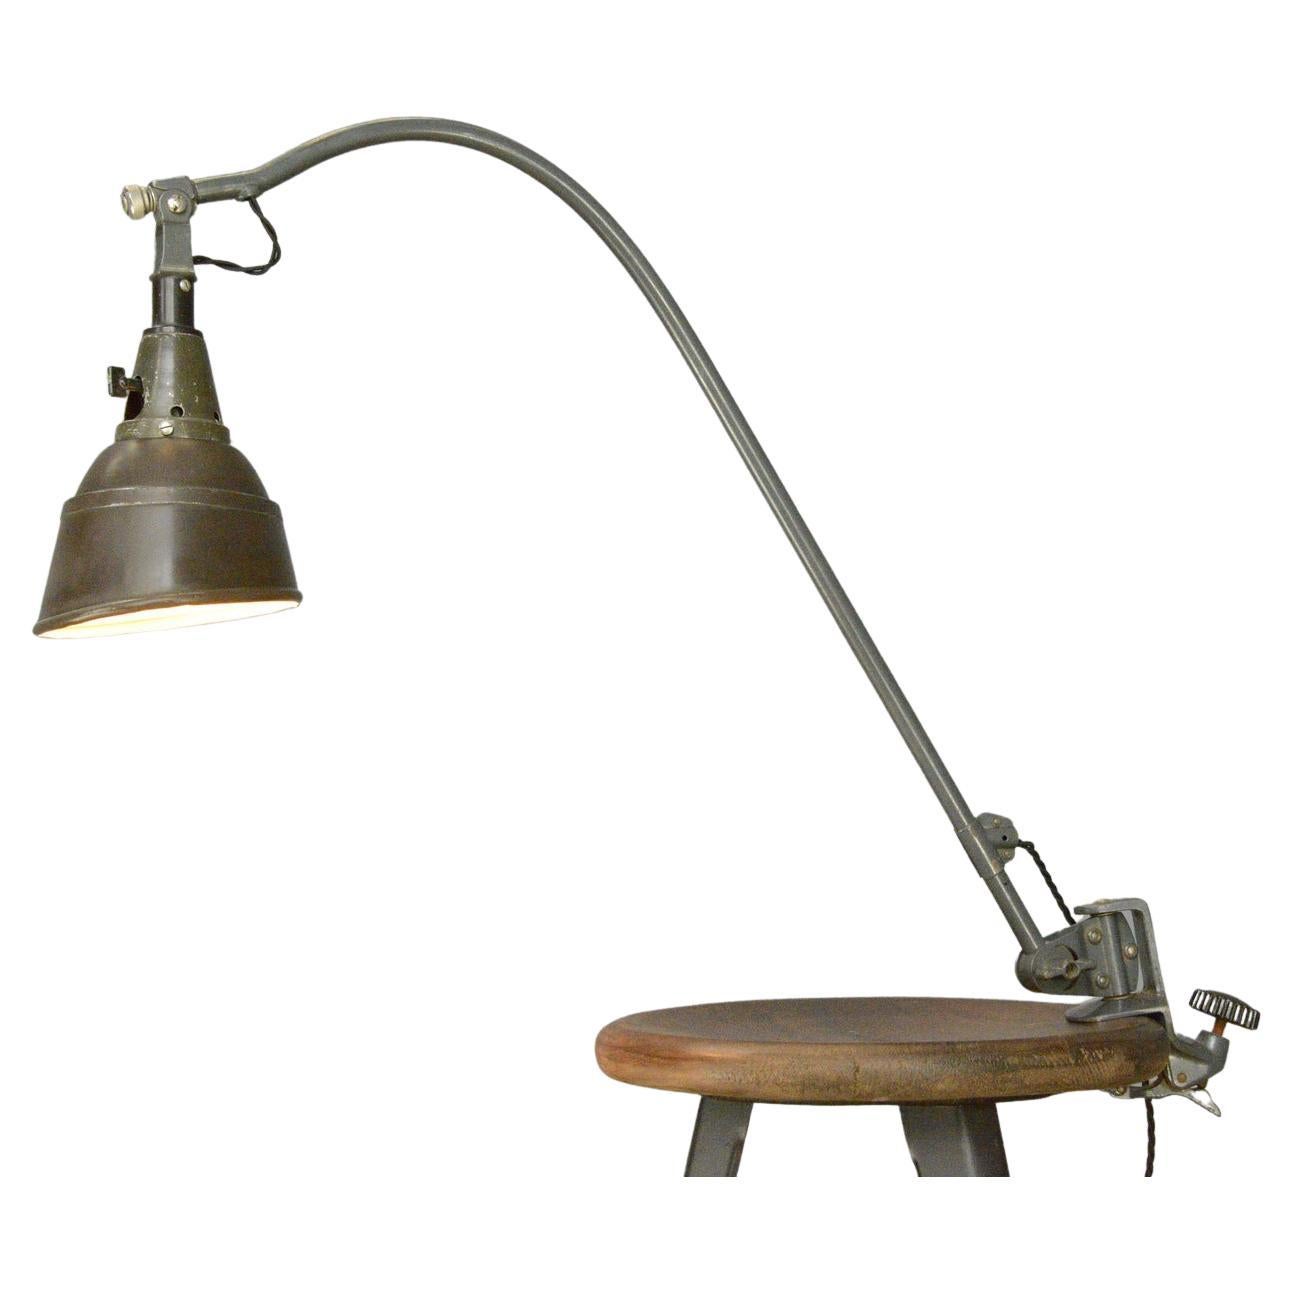 Typ 113 Peitsche Table Lamp by Curt Fischer for Midgard circa 1940s